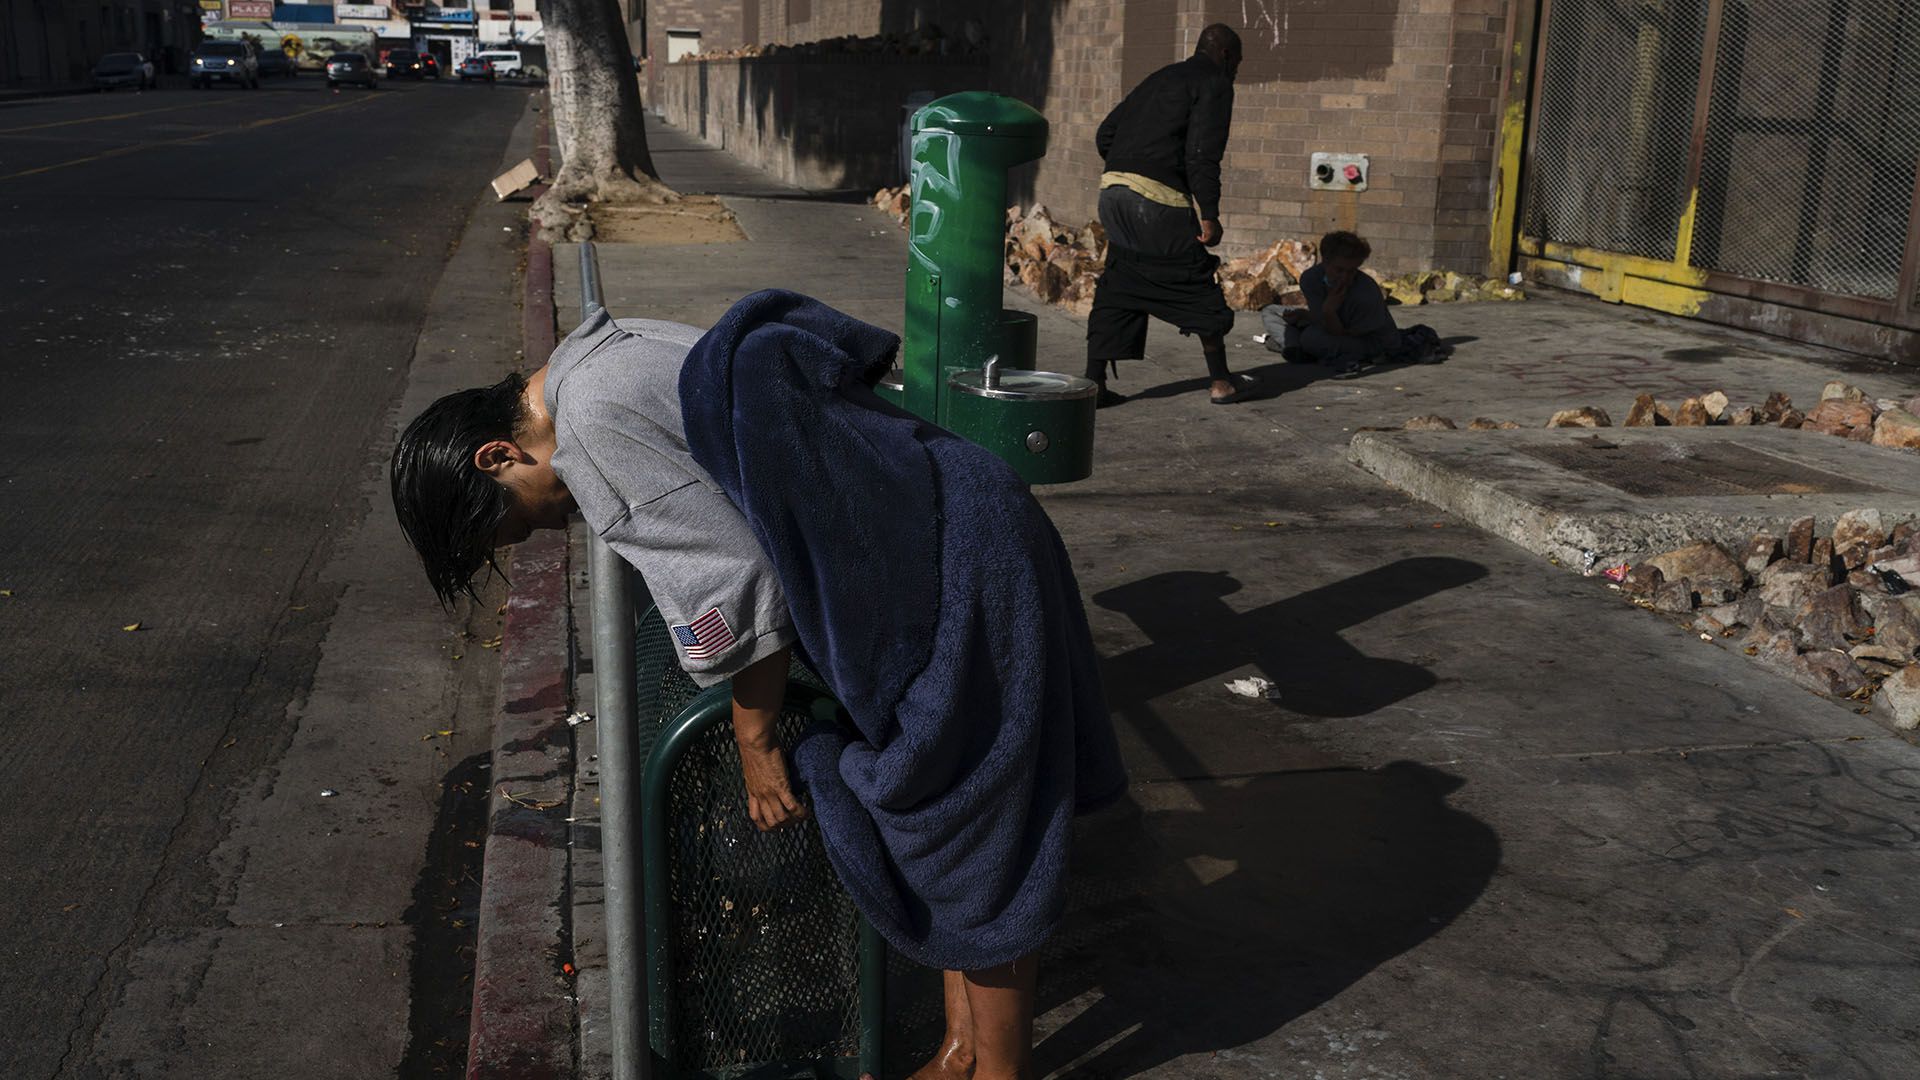 Una mujer indigente que consumió una dosis alta de fentanilo. La crisis afectó a los habitantes a cualquier nivel social. (AP Foto/Jae C. Hong)